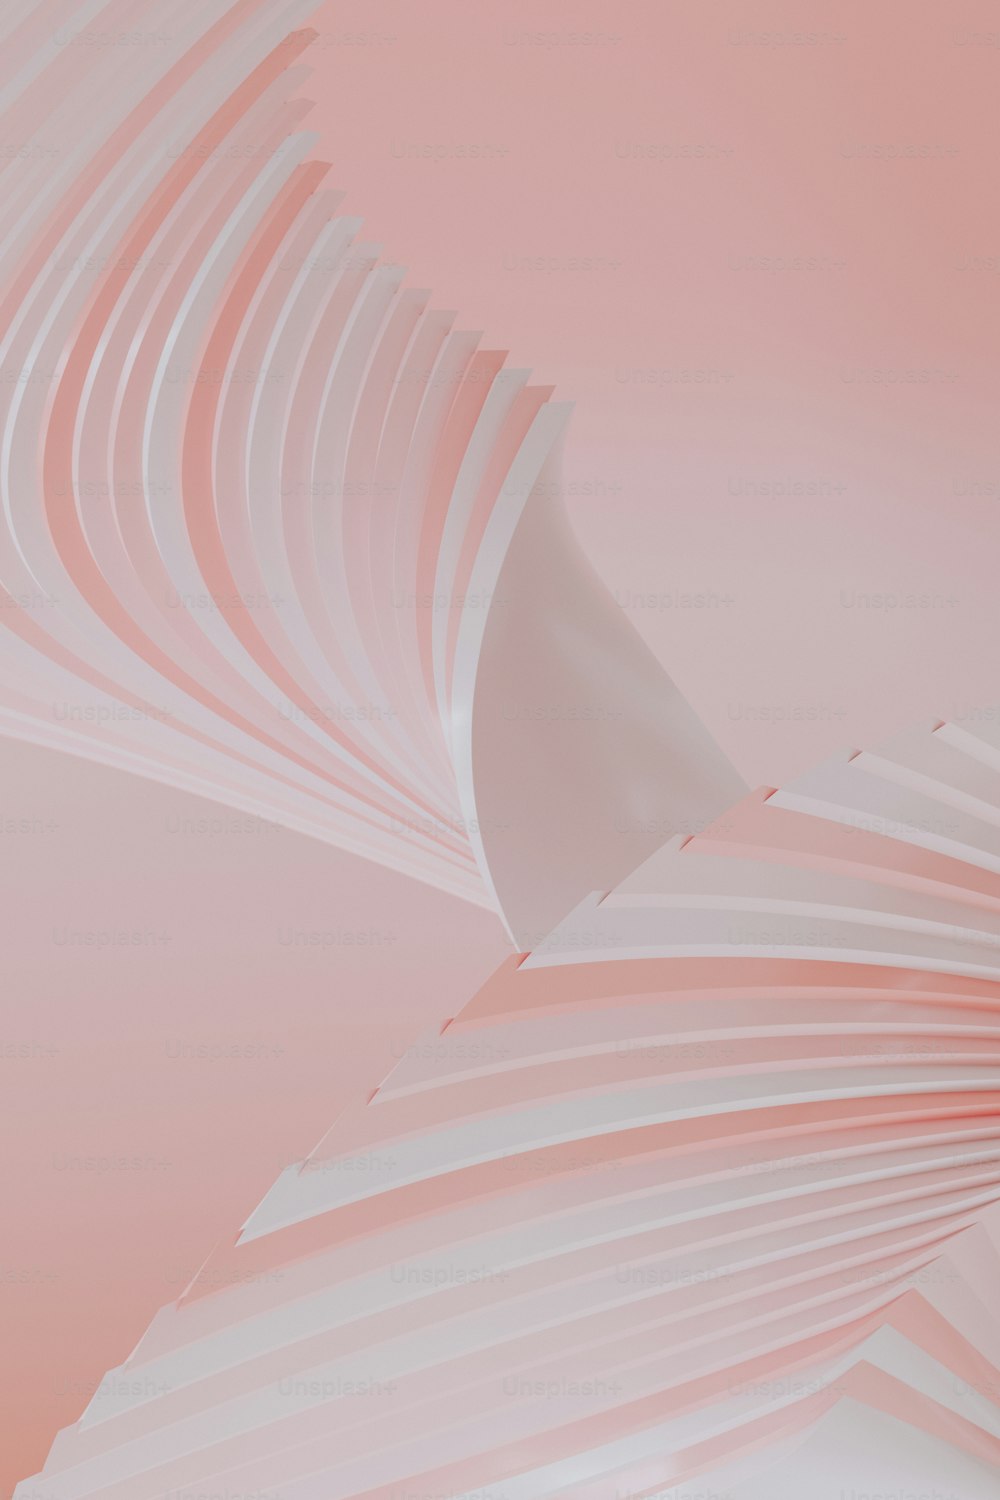 Una foto abstracta de un objeto blanco curvo